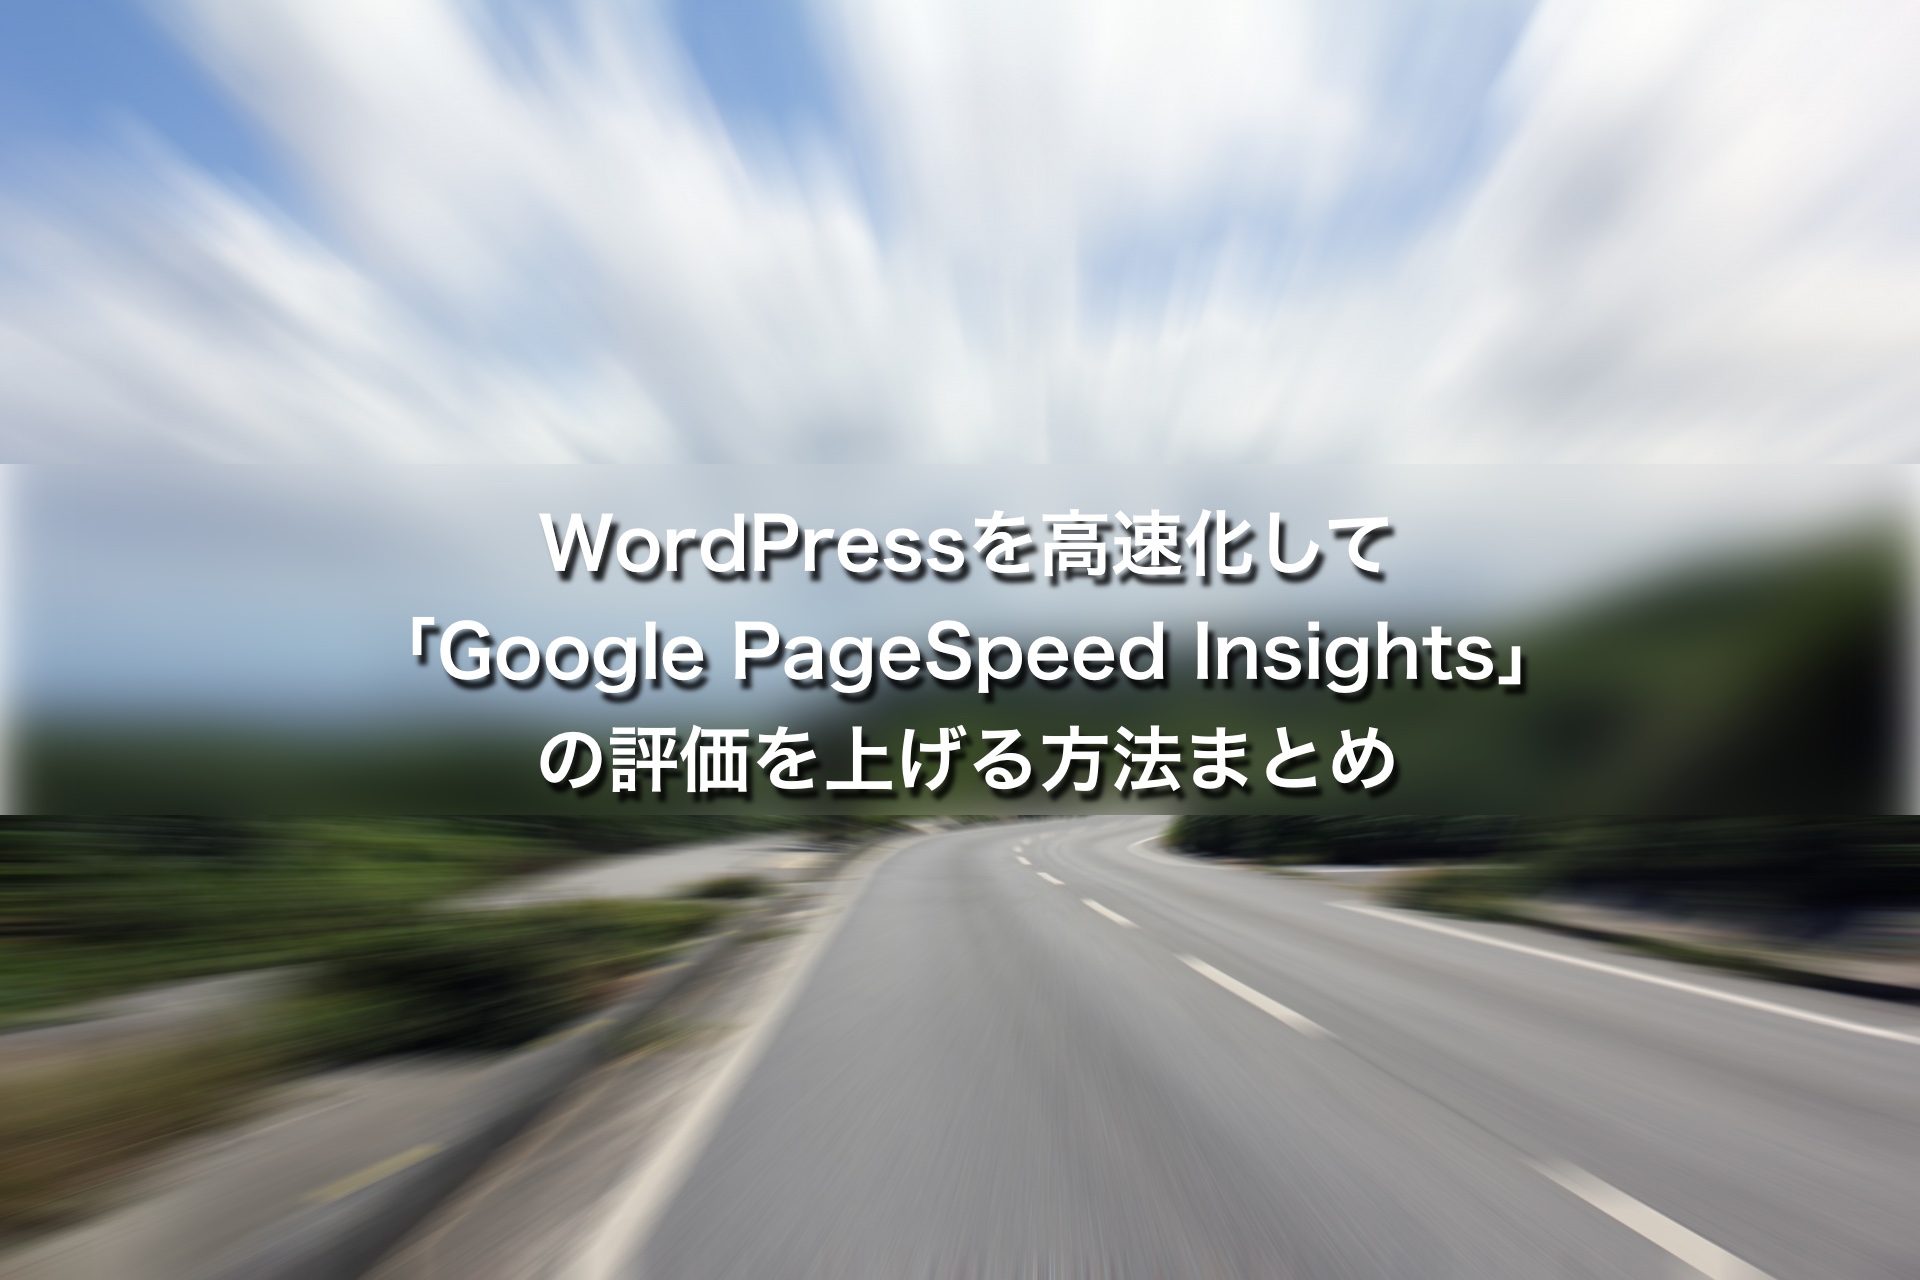 WordPressを高速化して「Google PageSpeed Insights」の評価を上げる方法まとめ